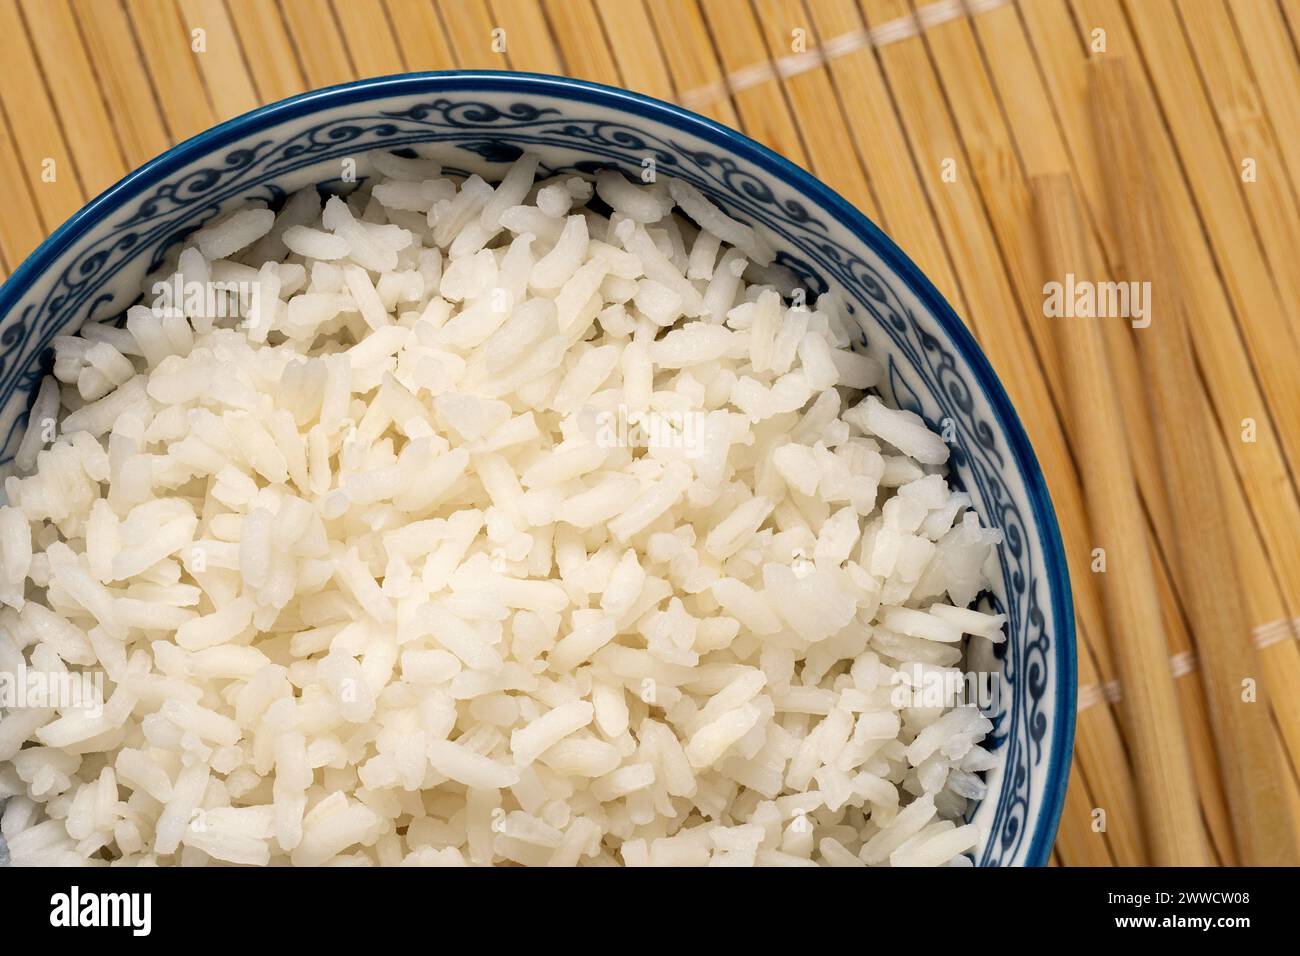 Detalle de arroz blanco cocido en un tazón asiático de cerámica blanca y azul junto a palillos aislados en mate de bambú ligero. Vista superior. Foto de stock